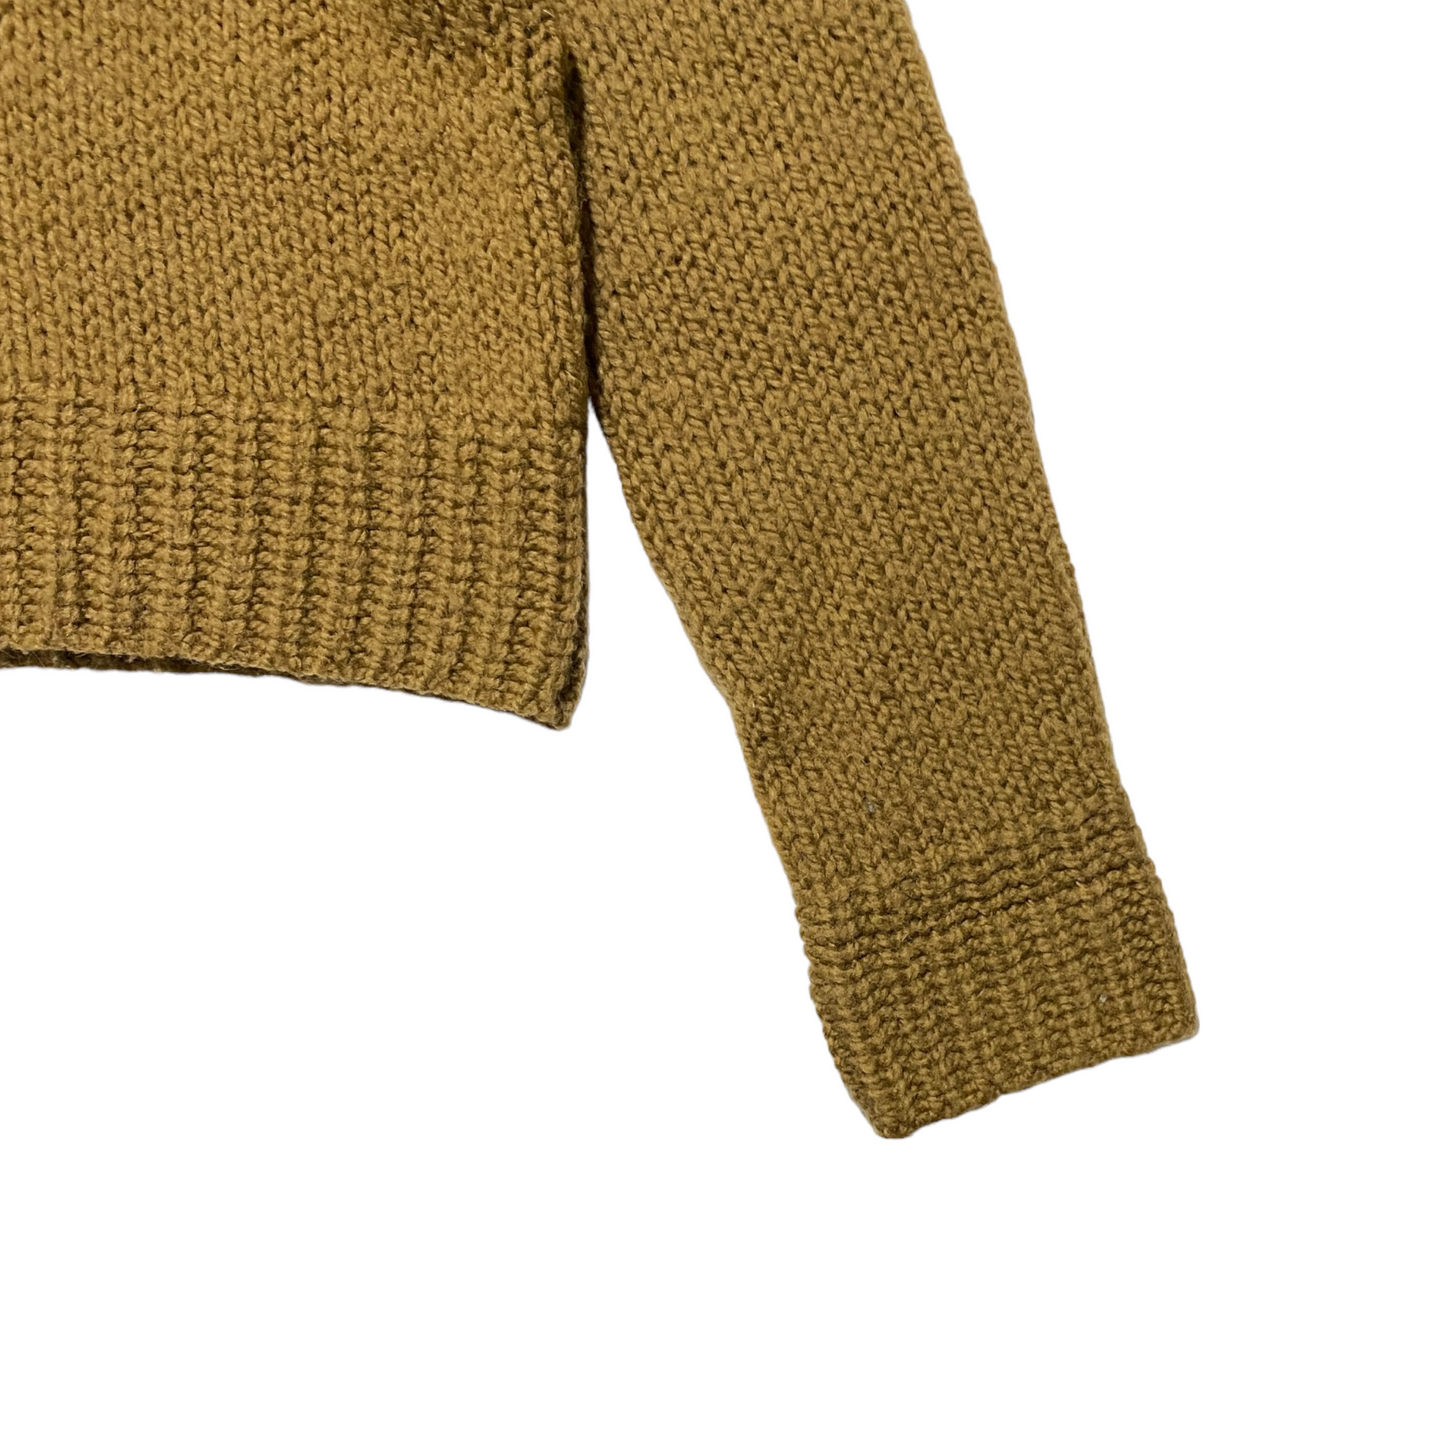 90's Miu Miu Knit Sweater (42)